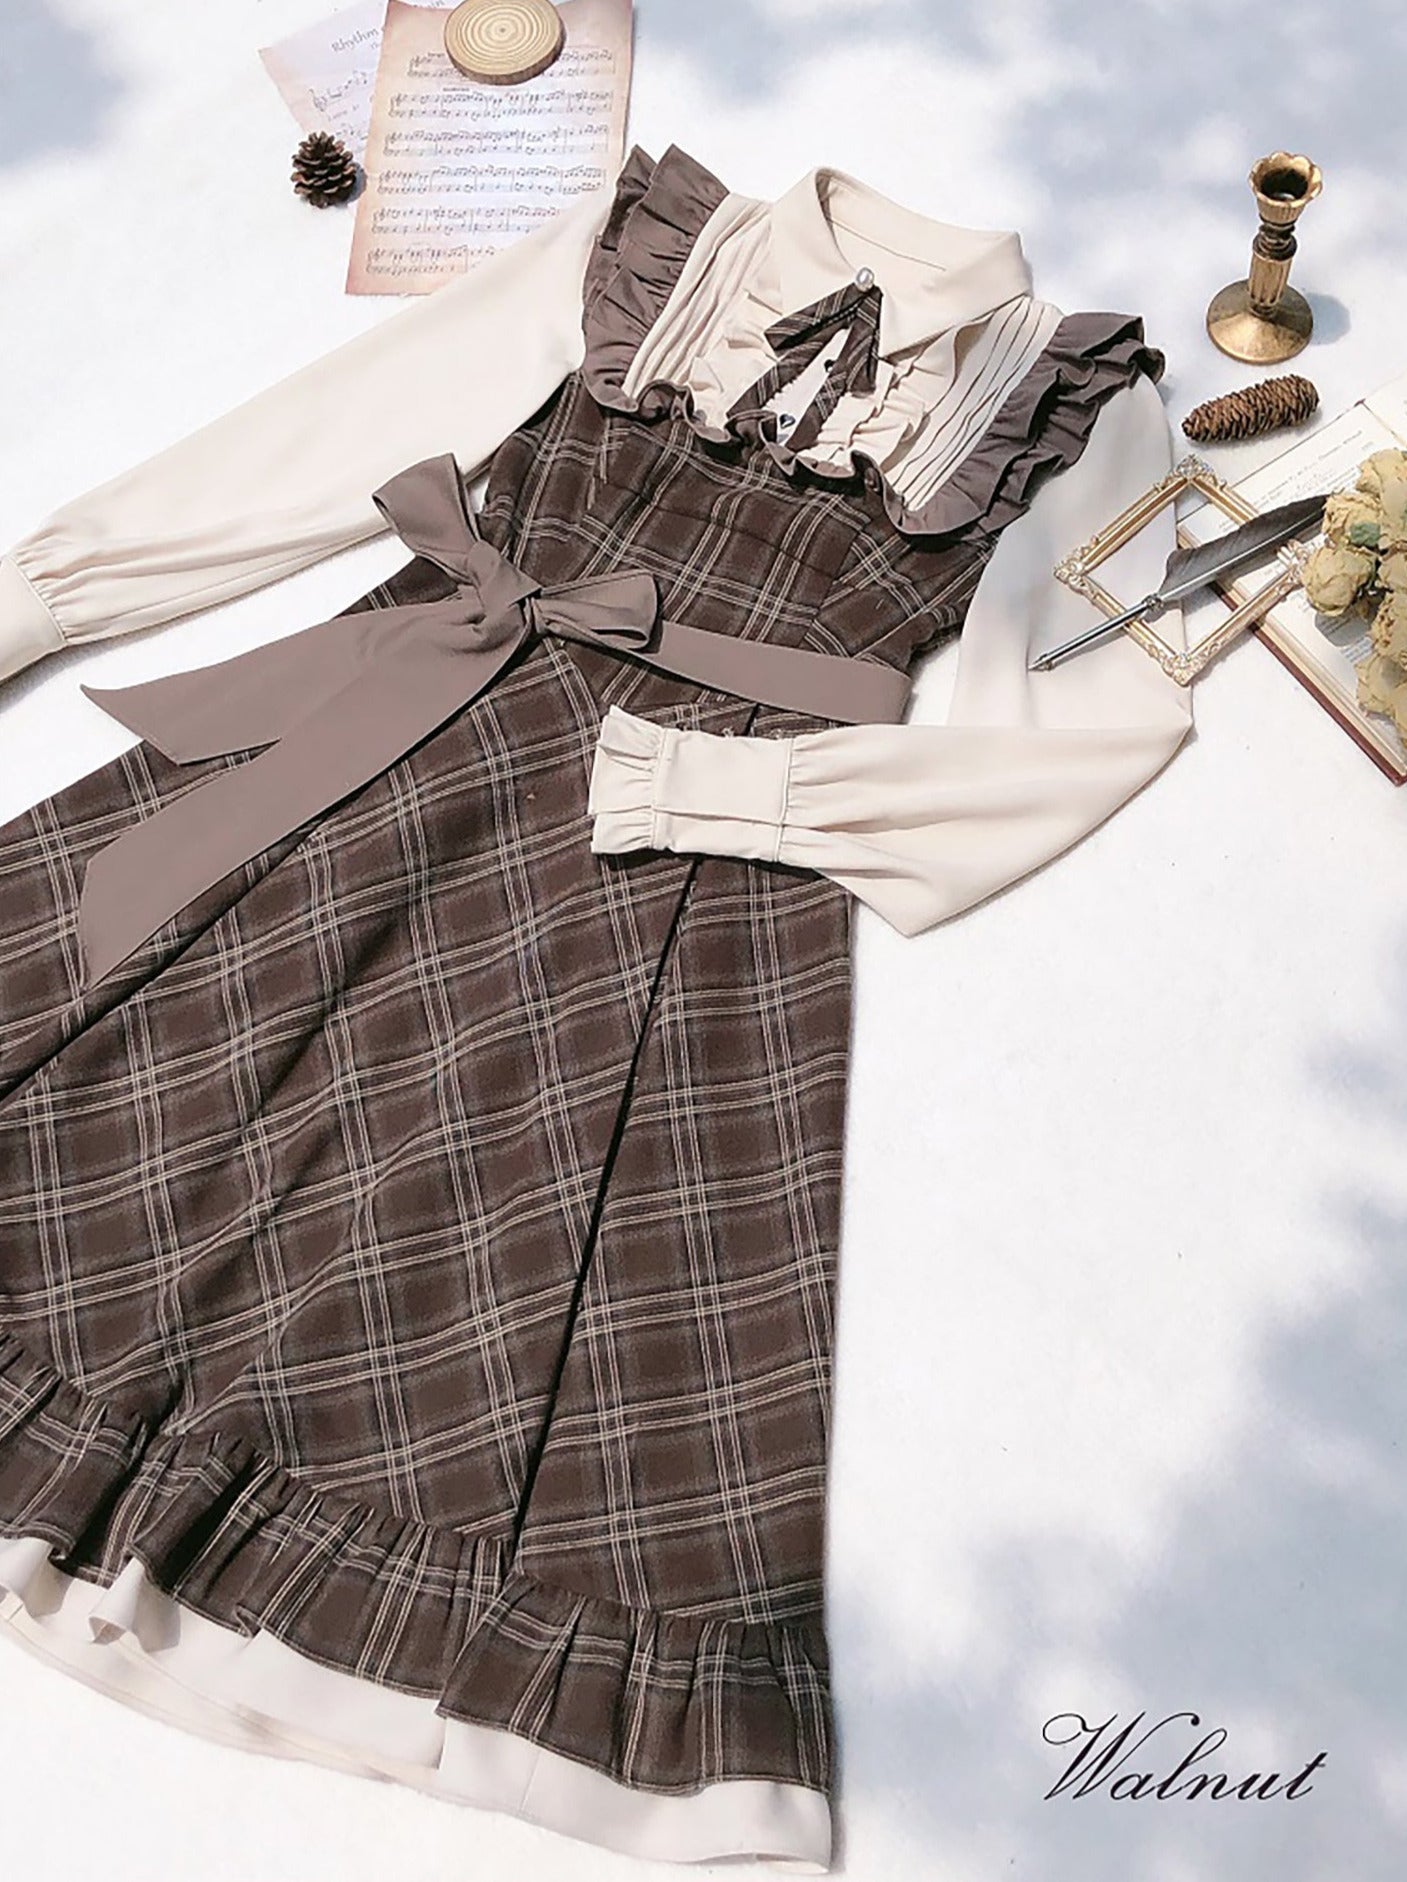 레트로 브라운 체크 볼륨 슬리브 레이어드 드레스 + 진주 리본 액세서리 + 클래식 벨트 코트 [예약상품] [예약상품